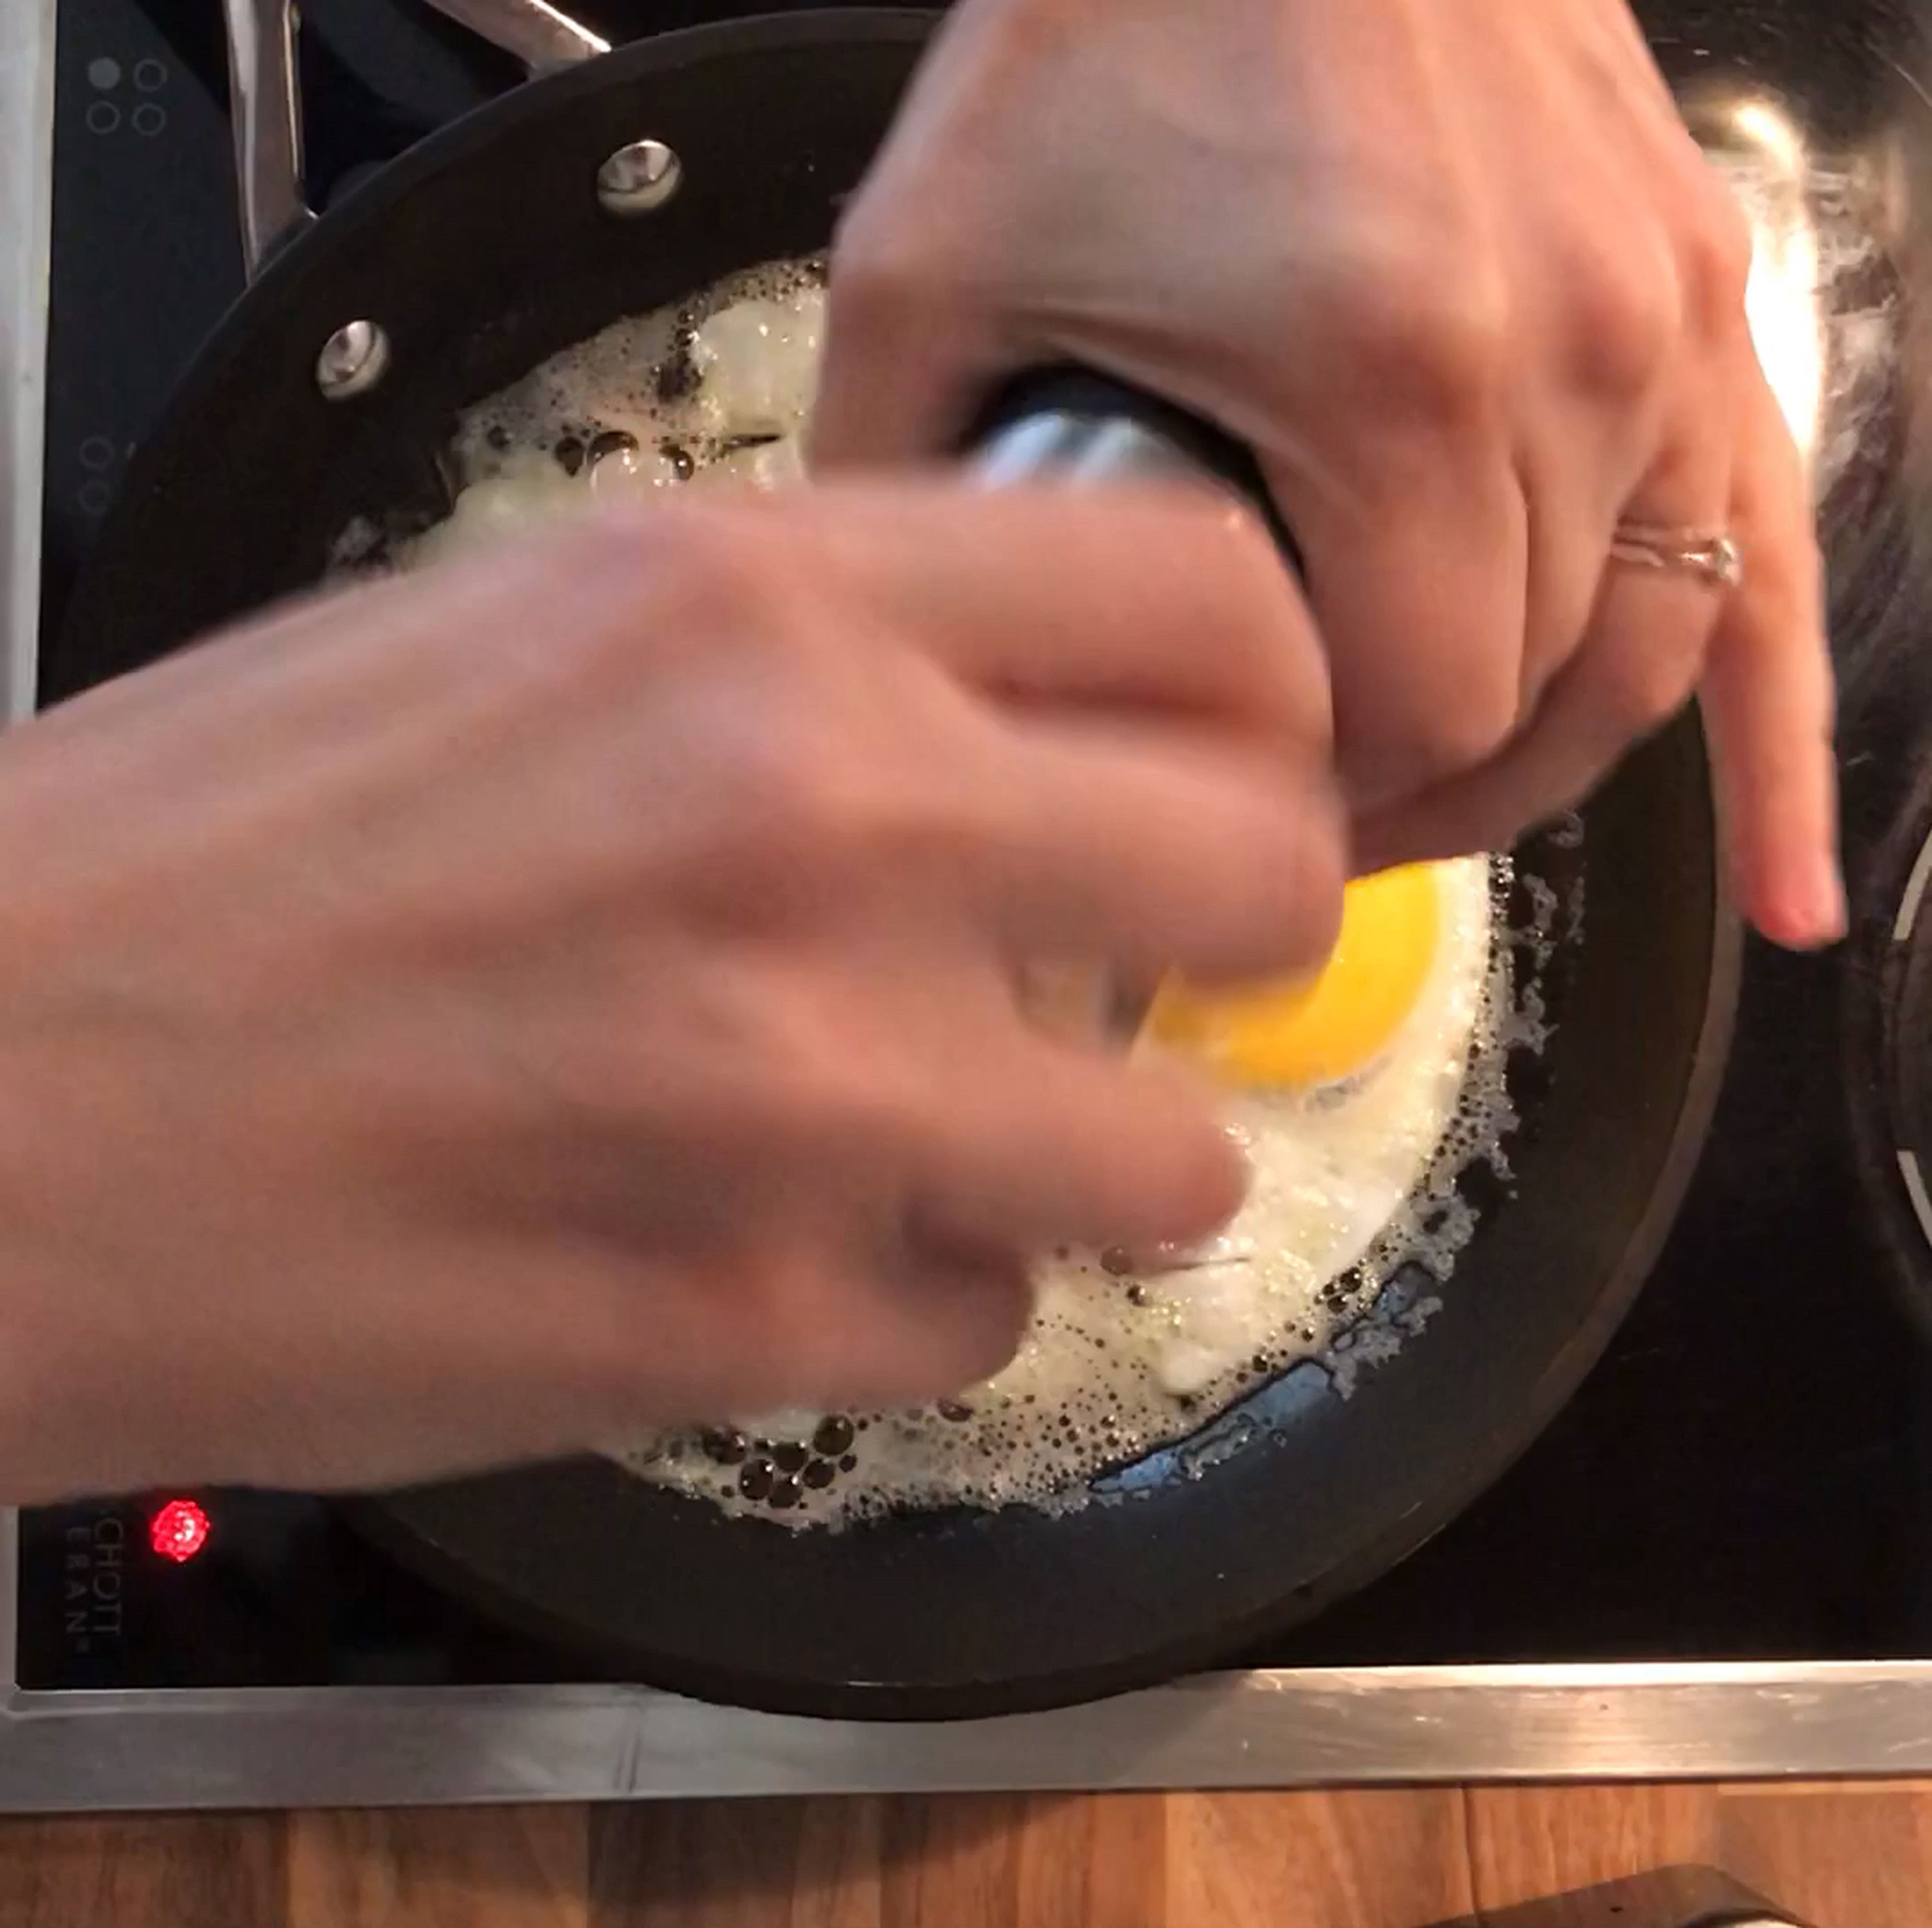 Eier mit Salz und Pfeffer abschmecken und so lange braten, bis das Eiweiß am Rand schon knusprig wird und das Eigelb in der Mitte noch flüssig ist. Du kannst es natürlich aber auch so zubereiten, wie du es am liebsten isst.